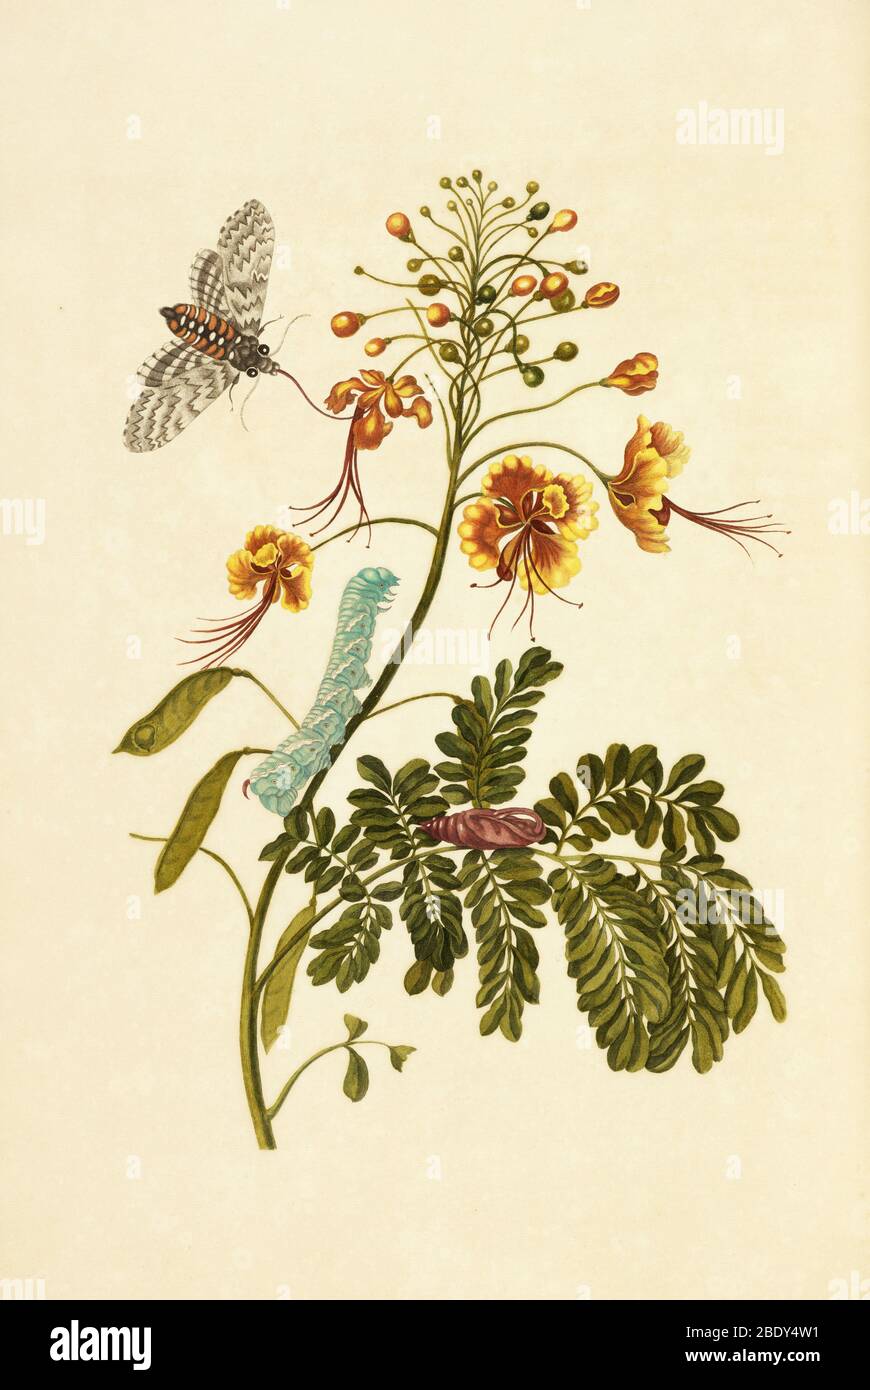 Tobacco Hawk Moth Metamorphosis, Flower Stock Photo